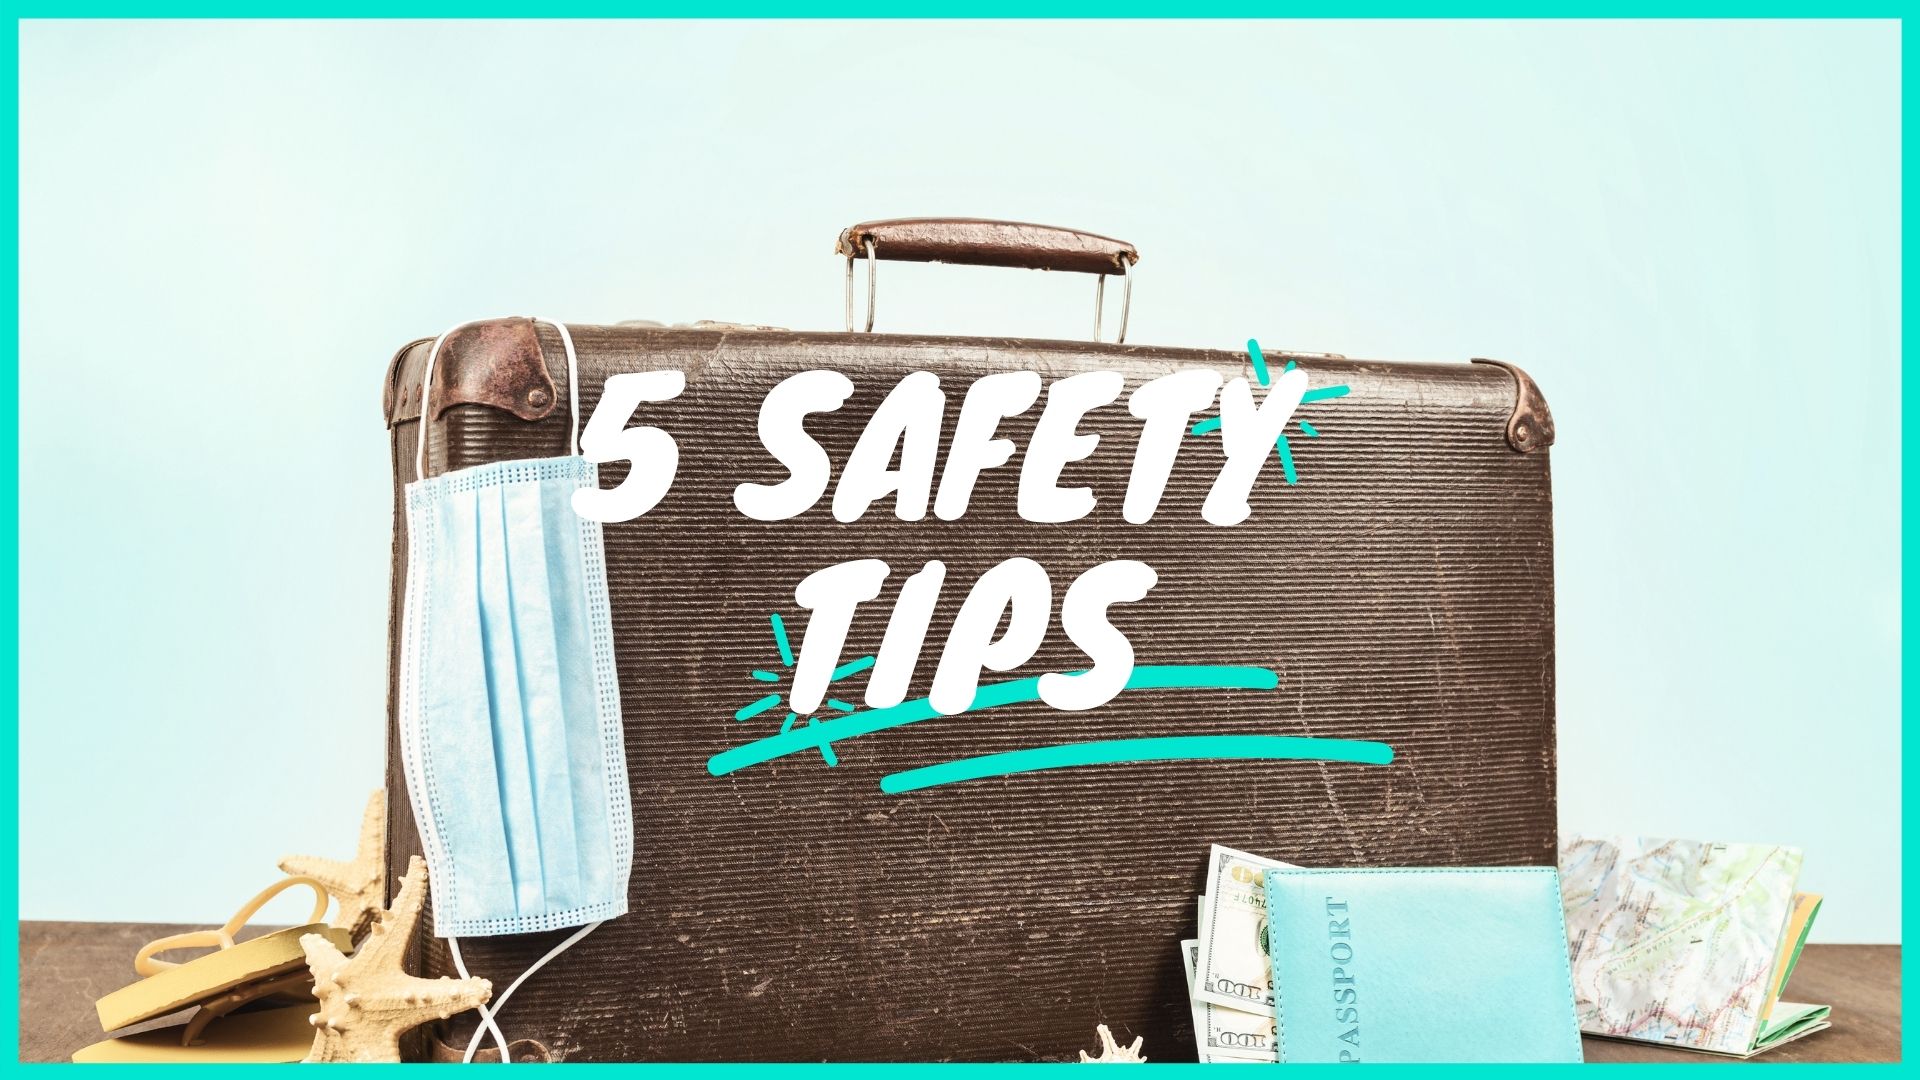 Top 5 Tipps für sicheres Reisen | Reisetipps